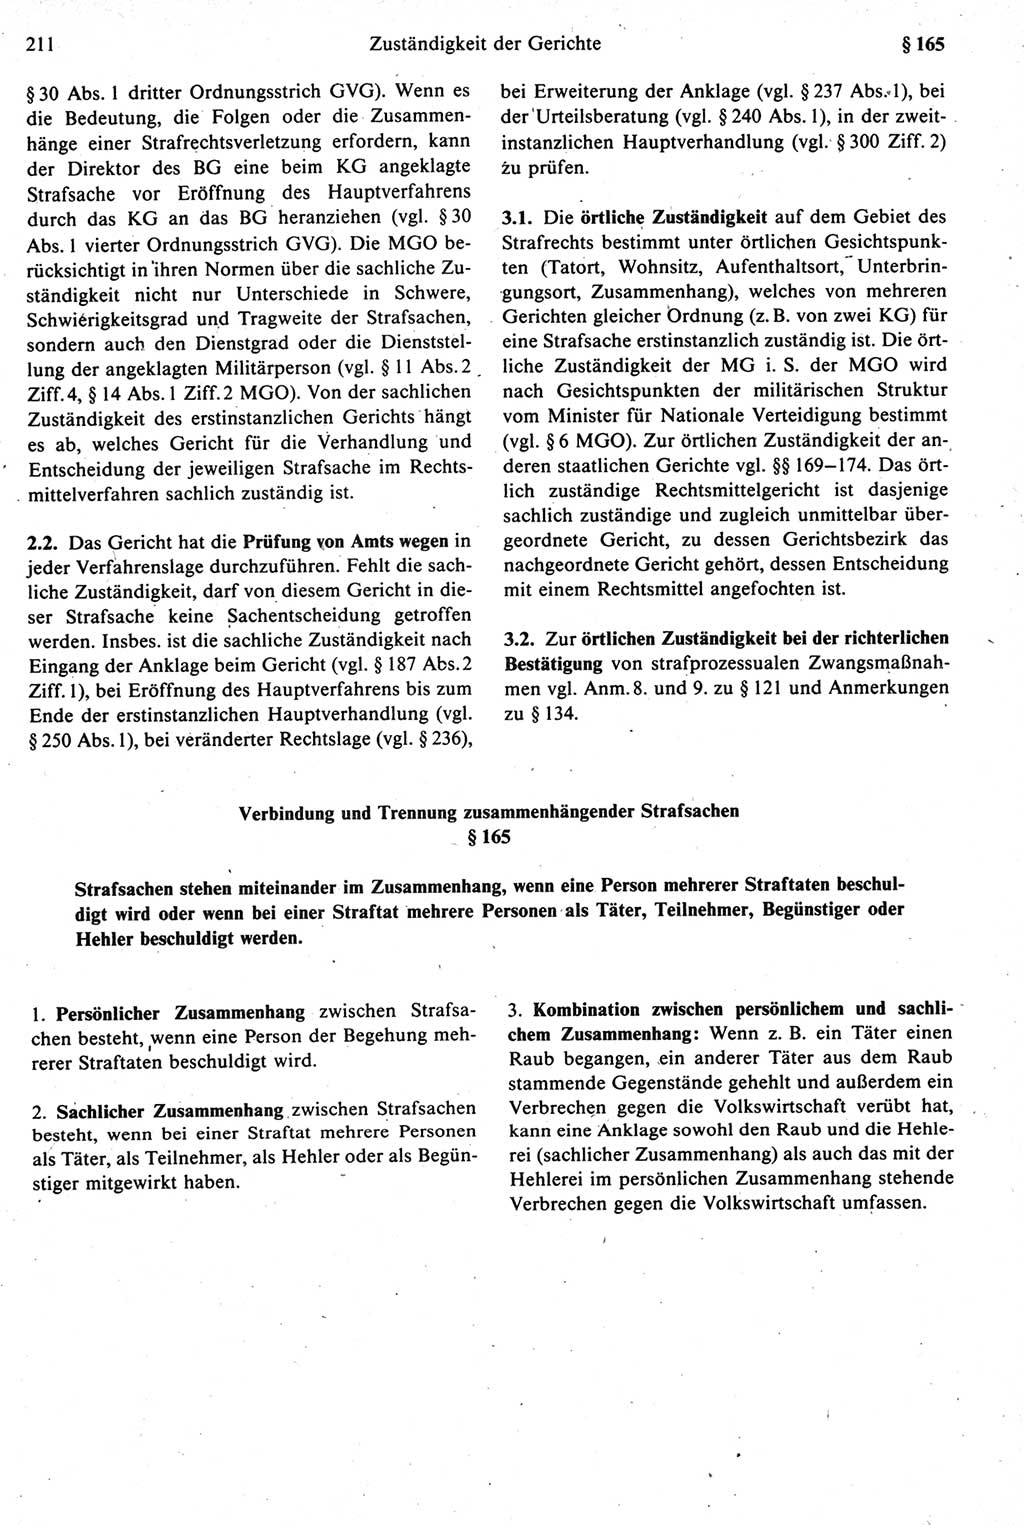 Strafprozeßrecht der DDR [Deutsche Demokratische Republik], Kommentar zur Strafprozeßordnung (StPO) 1987, Seite 211 (Strafprozeßr. DDR Komm. StPO 1987, S. 211)